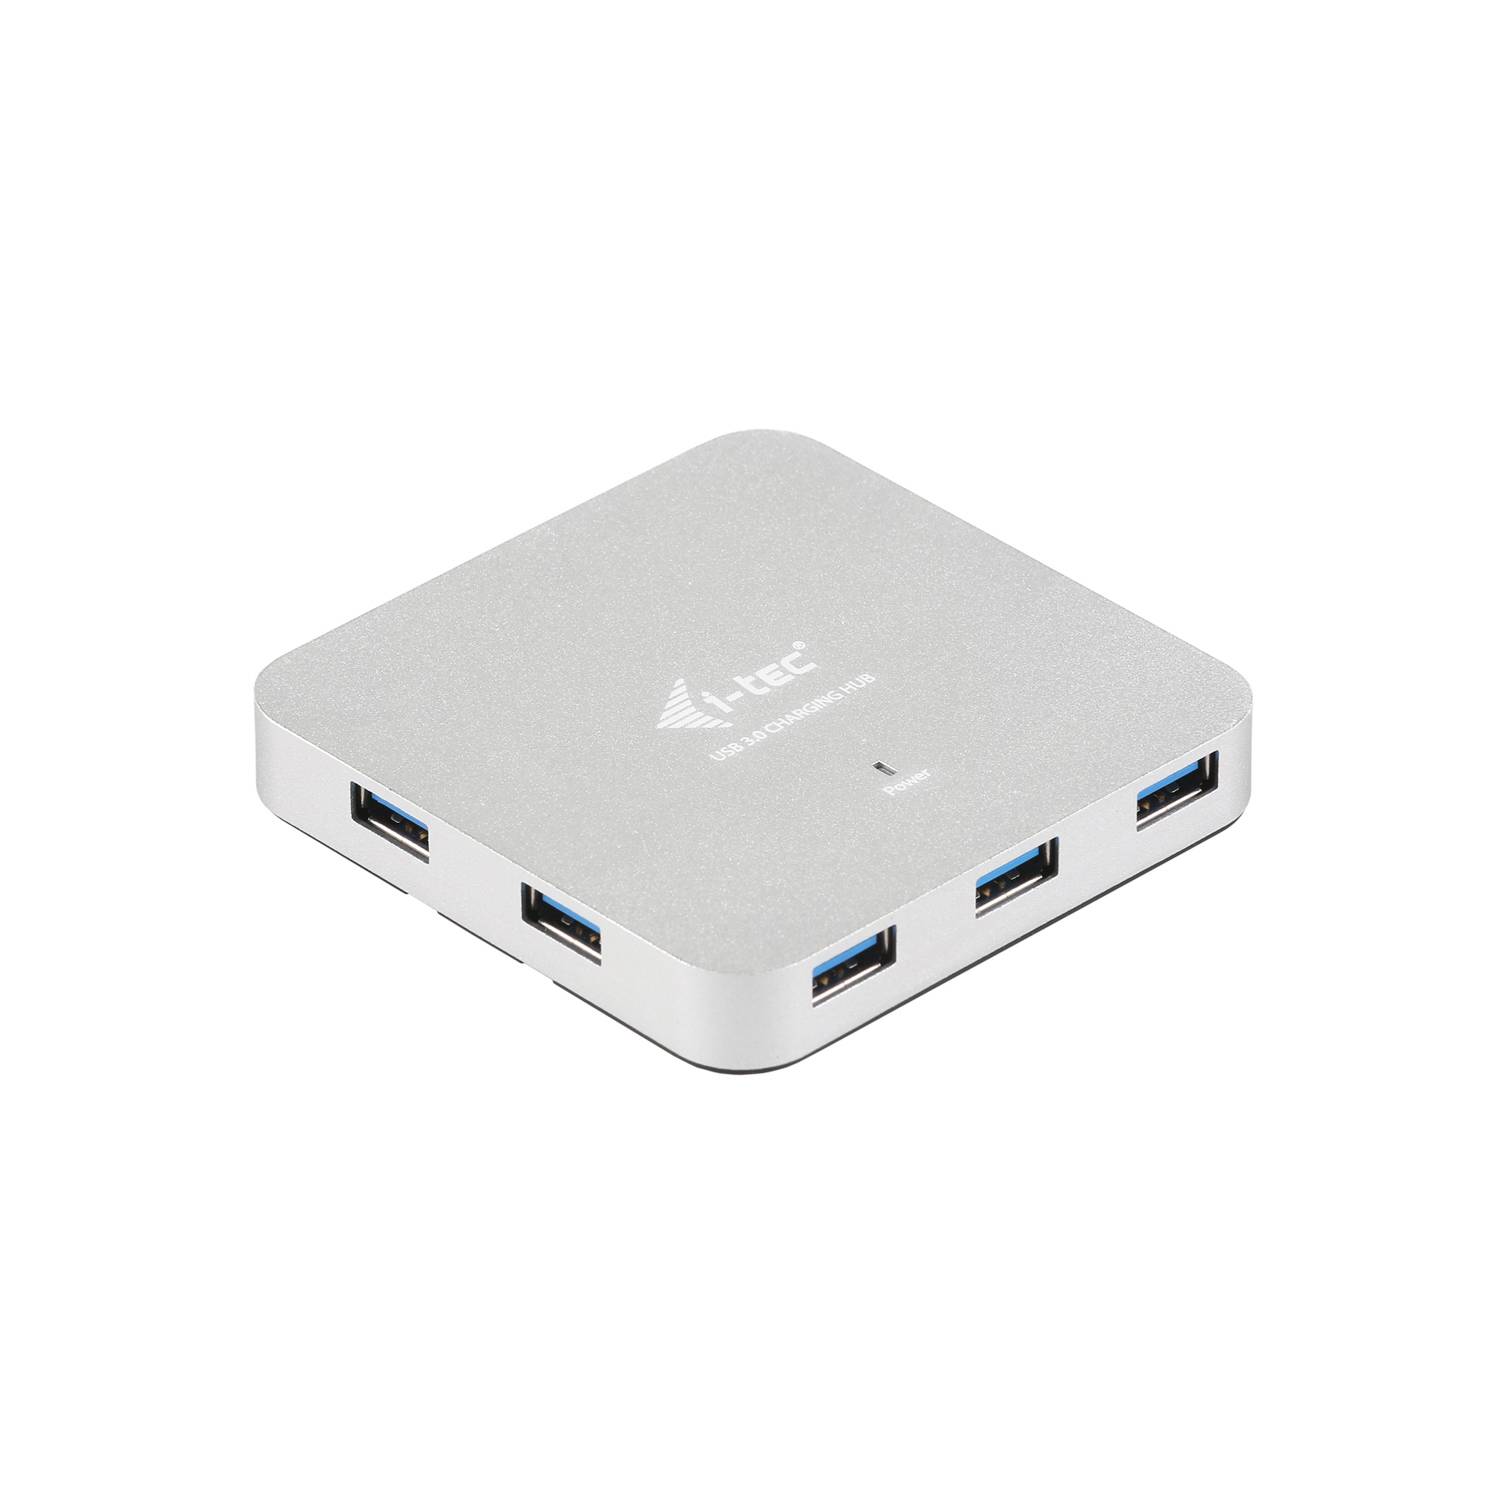 Rca Informatique - image du produit : I-TEC METAL ACTIVE HUB 7 PORT USB 3.0 WITH PS WIN MAC OS